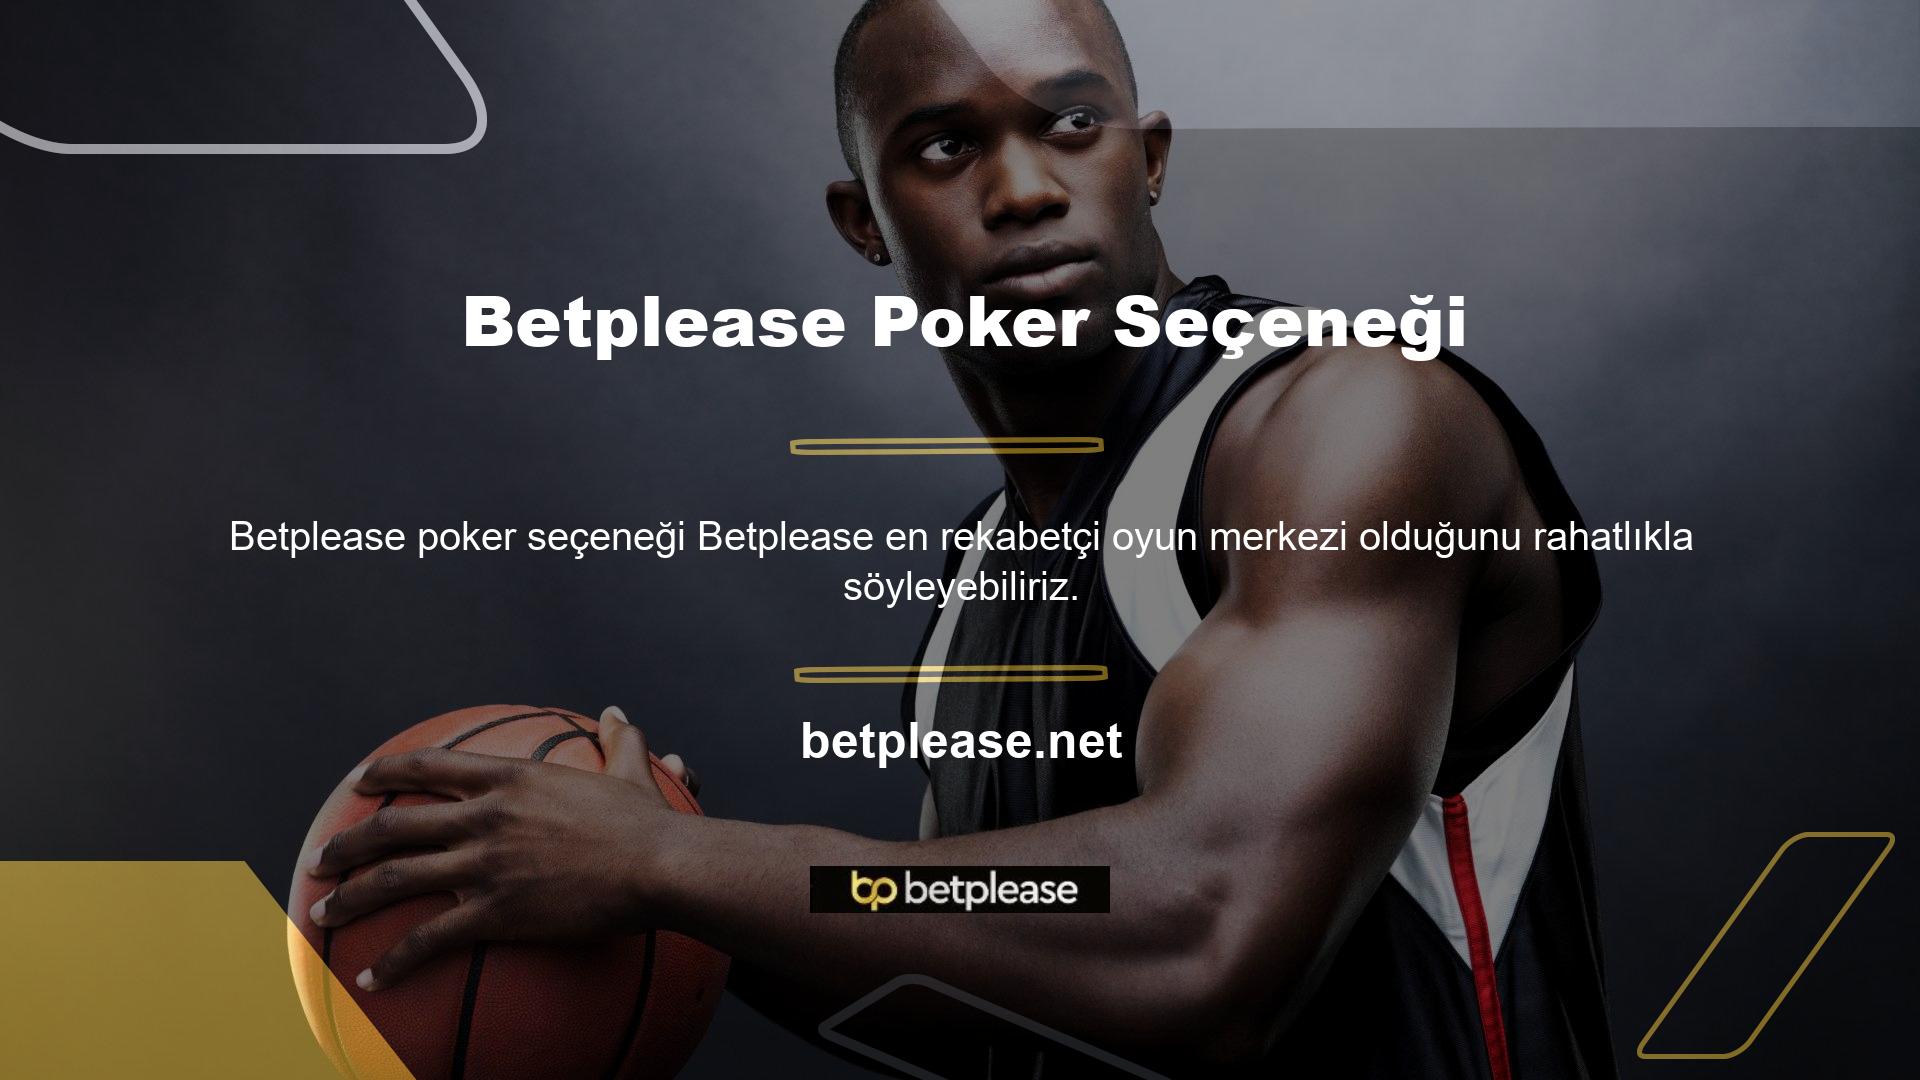 Poker alanında farklı zaman dilimlerinde aktif olan binlerce çevrimiçi üye bulunmaktadır